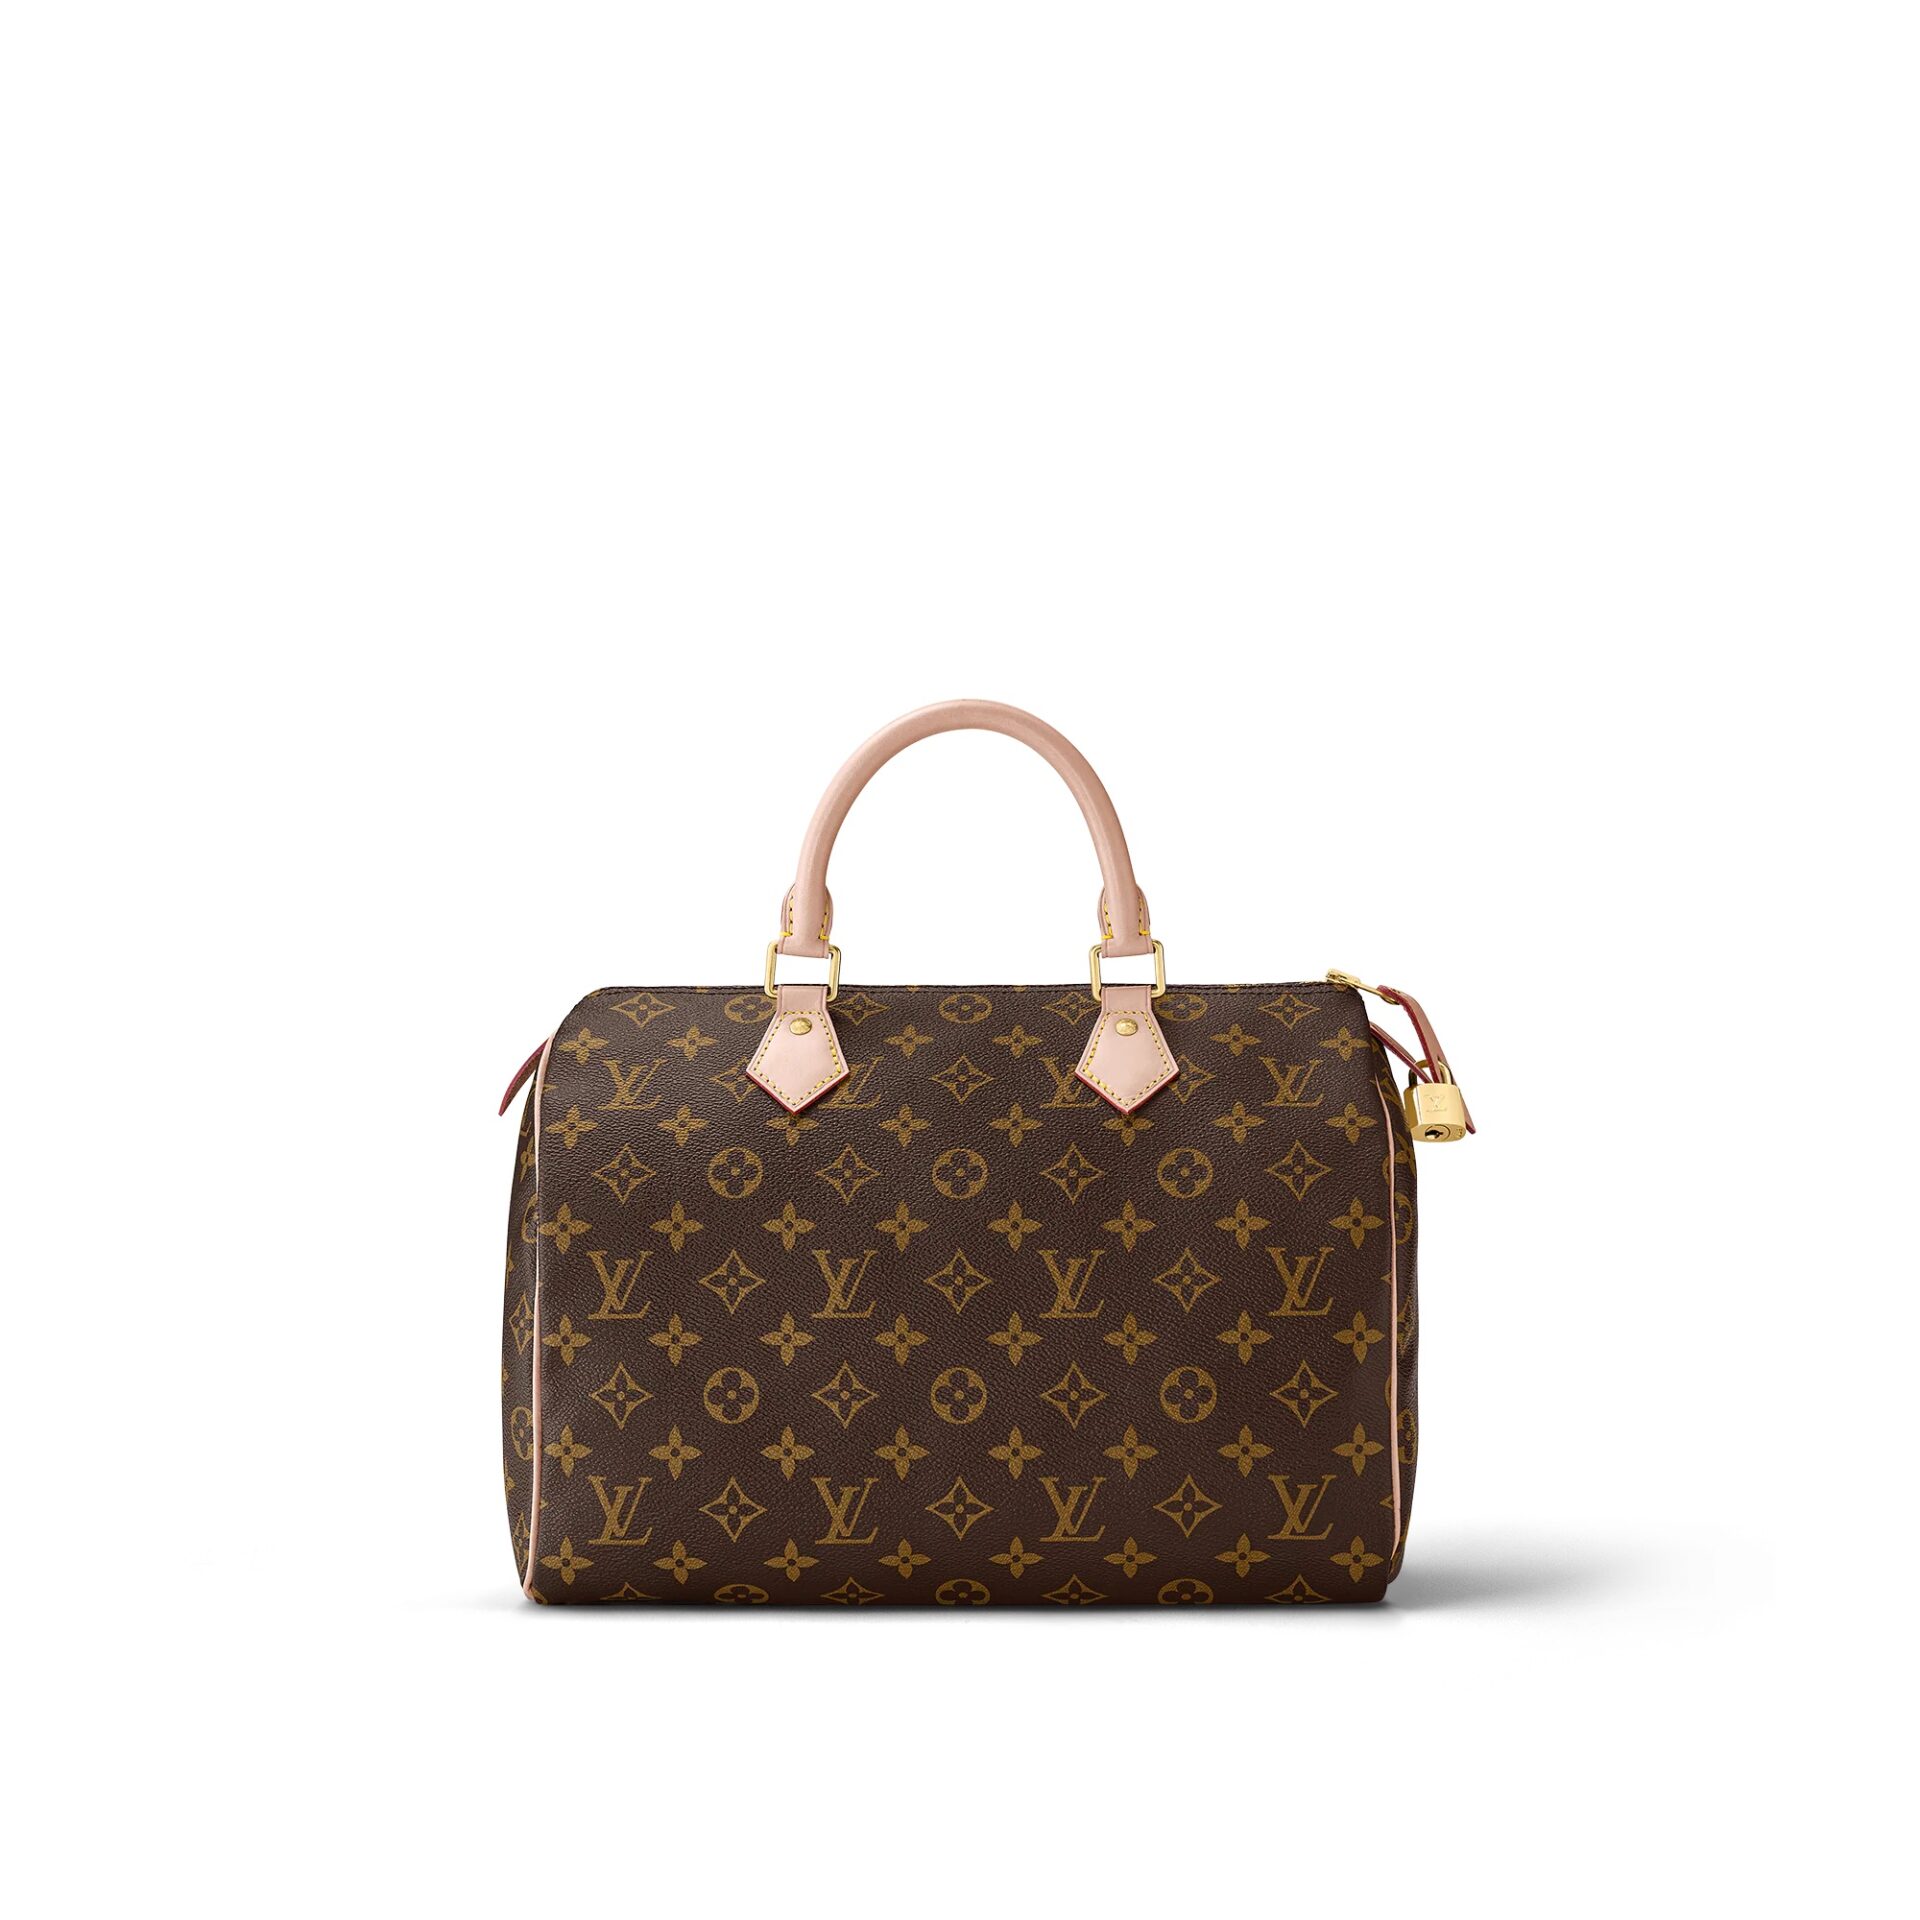 Le sac Speedy de Louis Vuitton